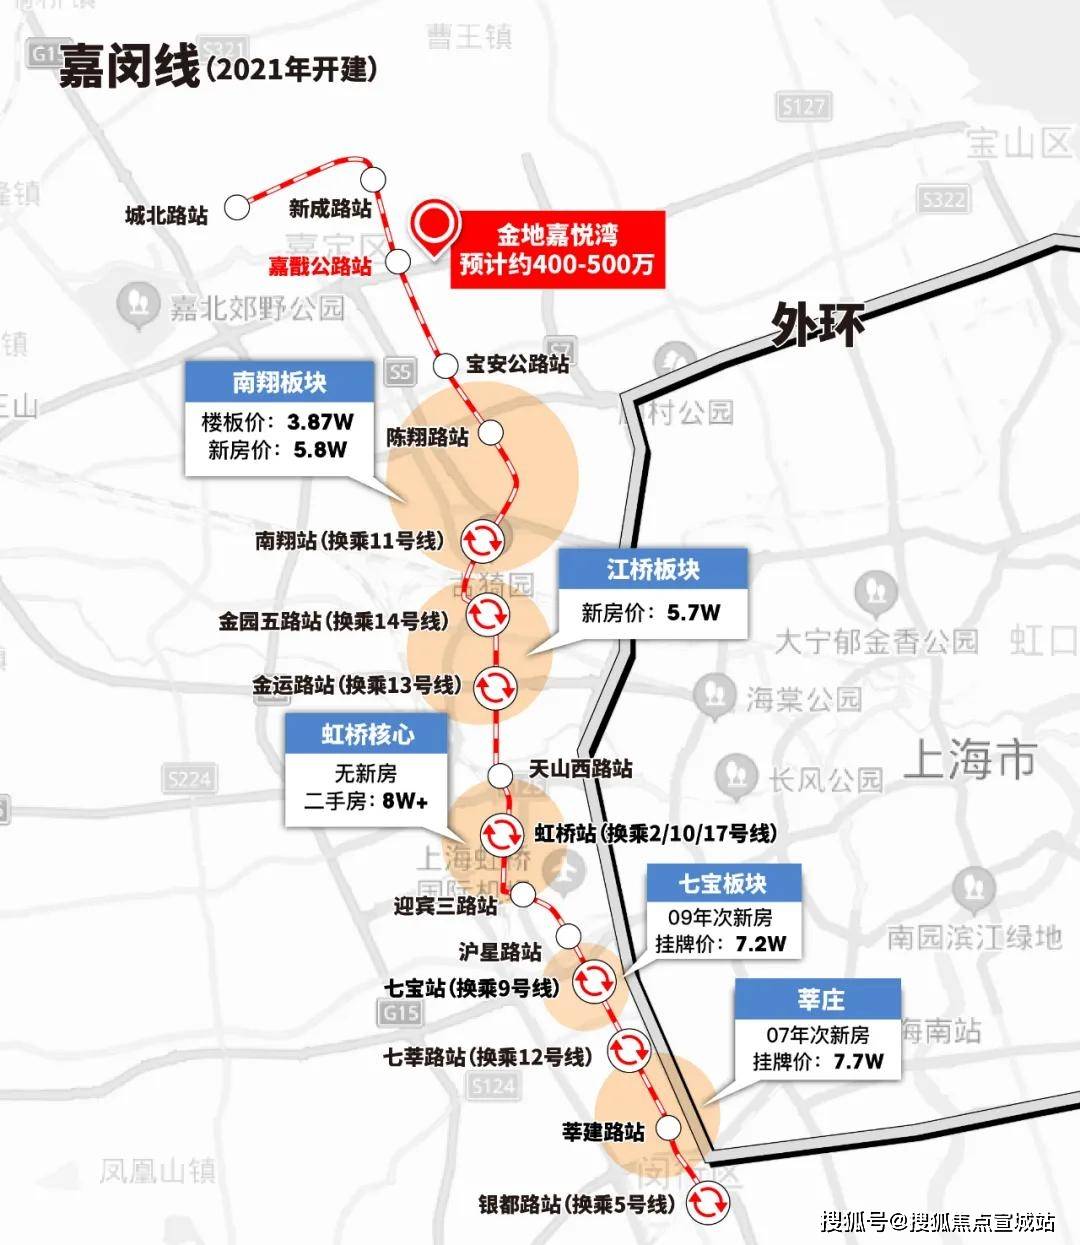 在2020年11月13日, 上海市交通委员会更是公示了嘉闵线全线站点.